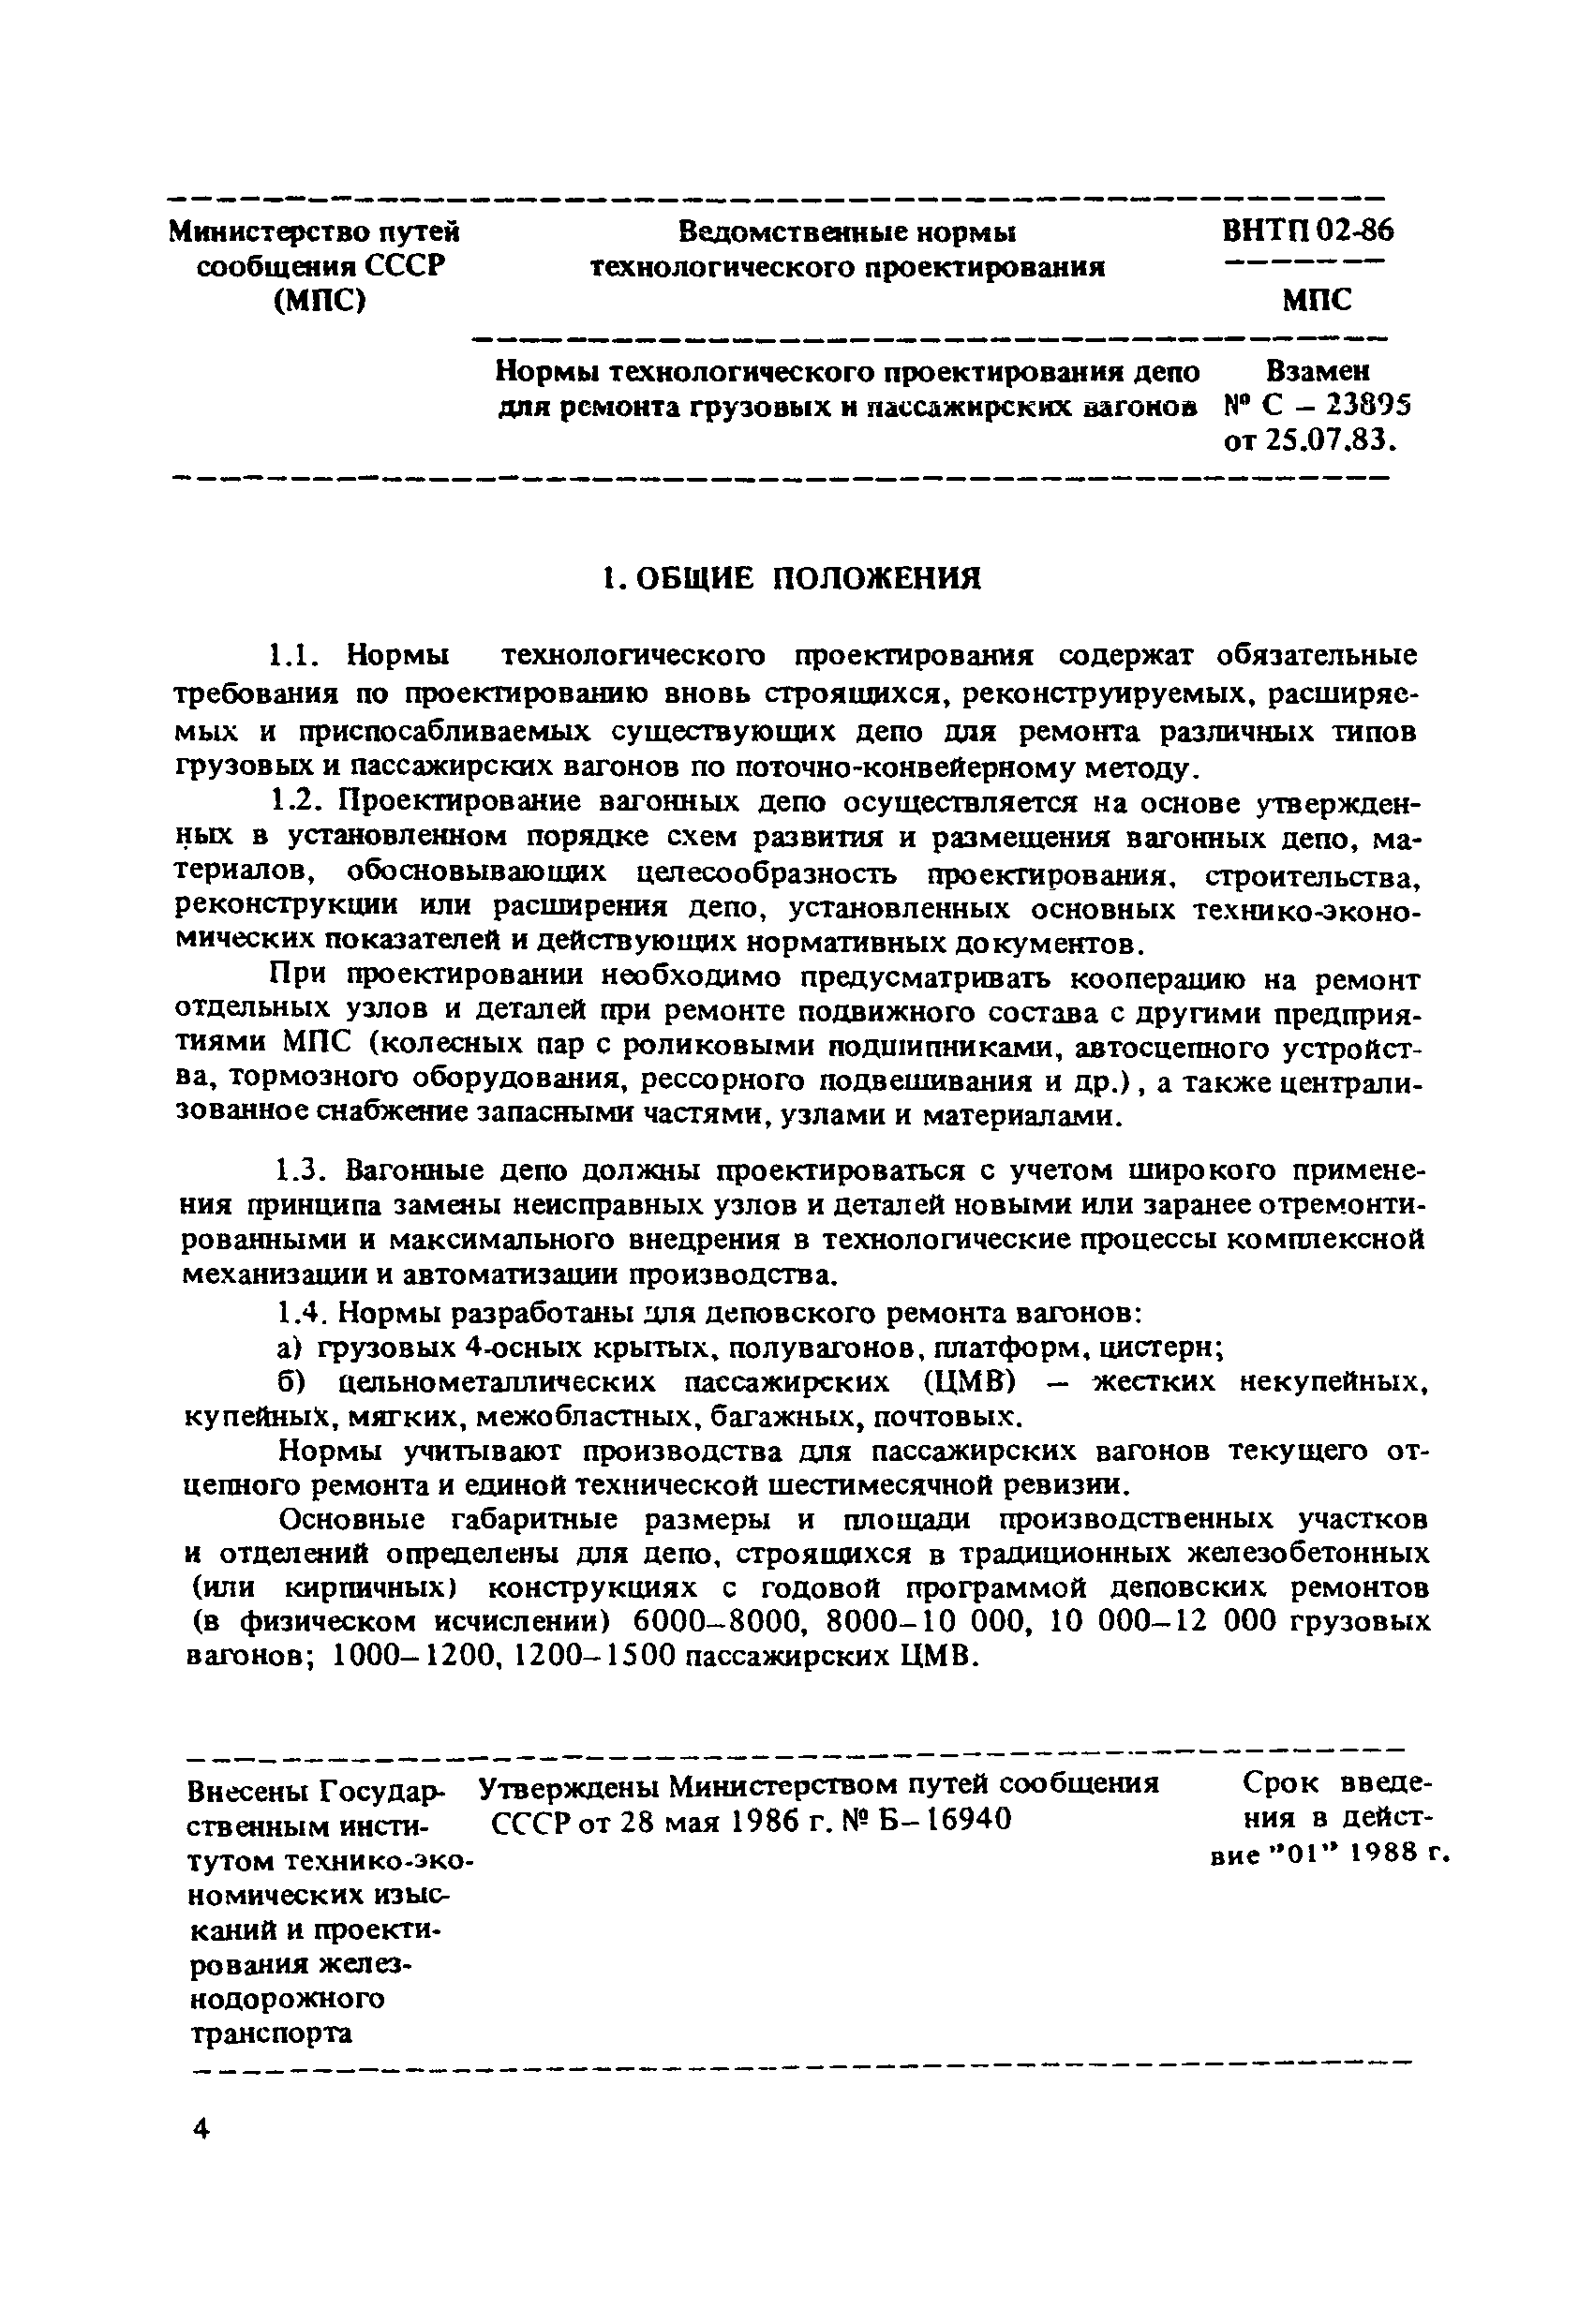 ВНТП 02-86/МПС